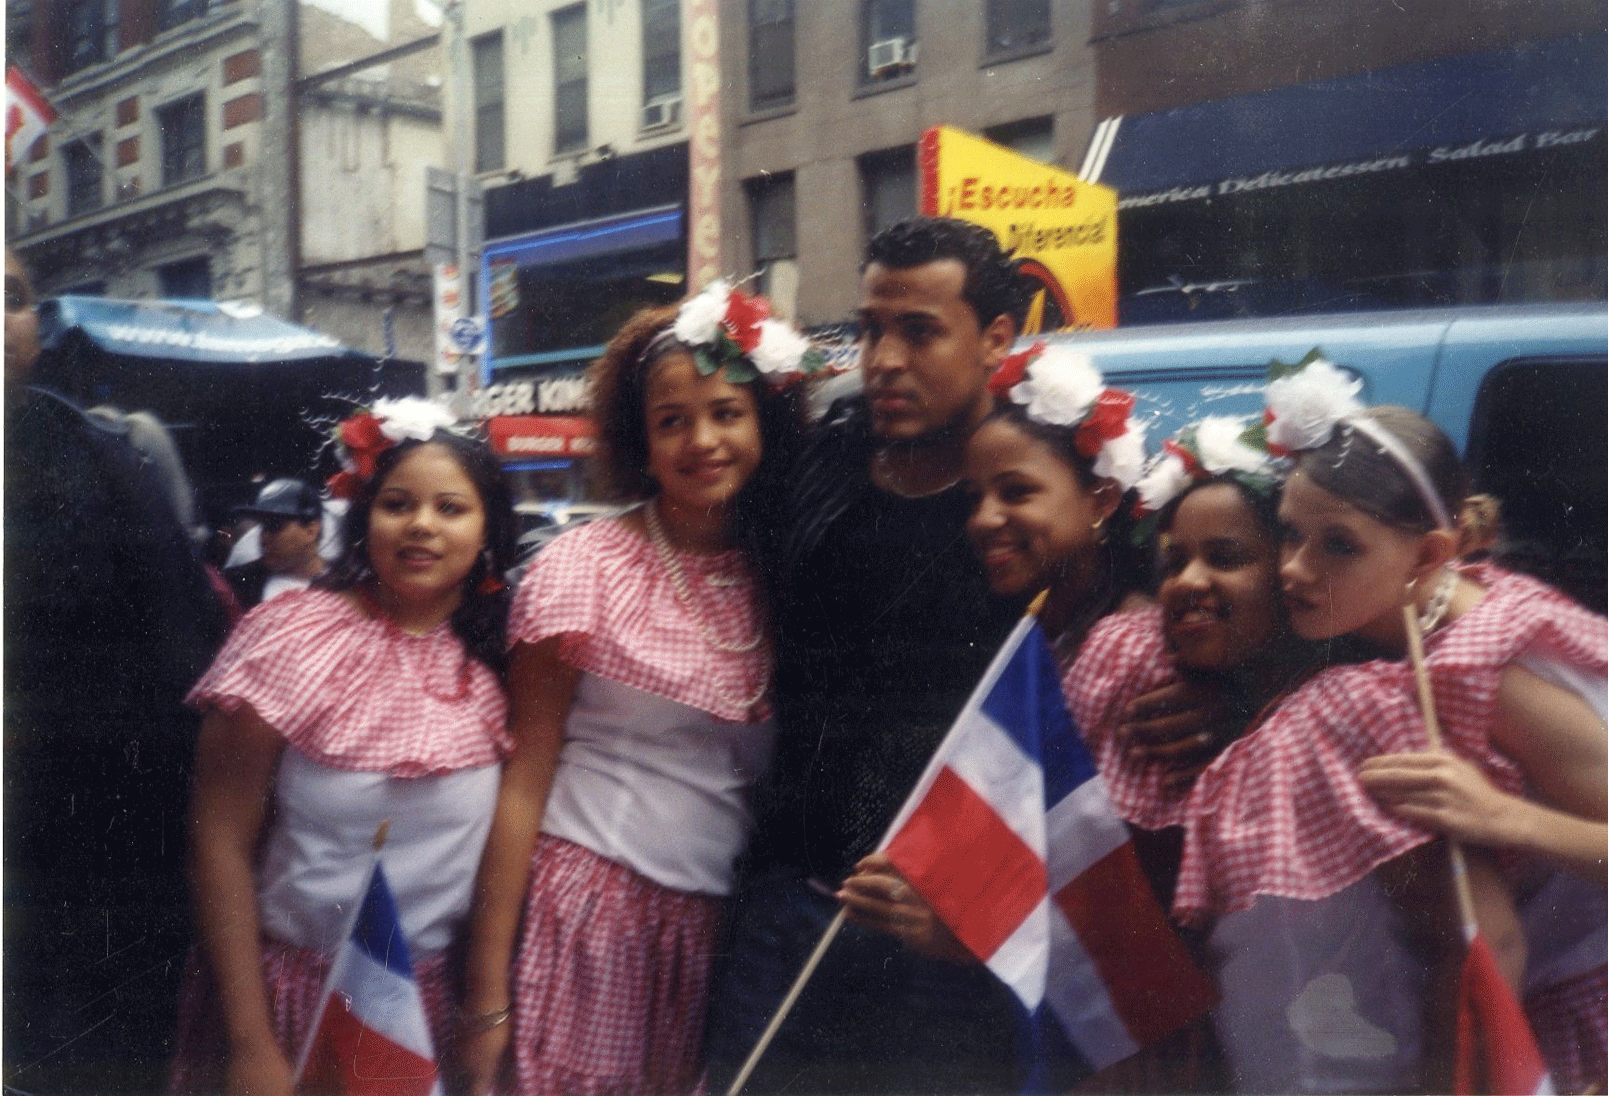 Lenny Santos from Aventura at the New York City Hispanic Day Parade, 2003